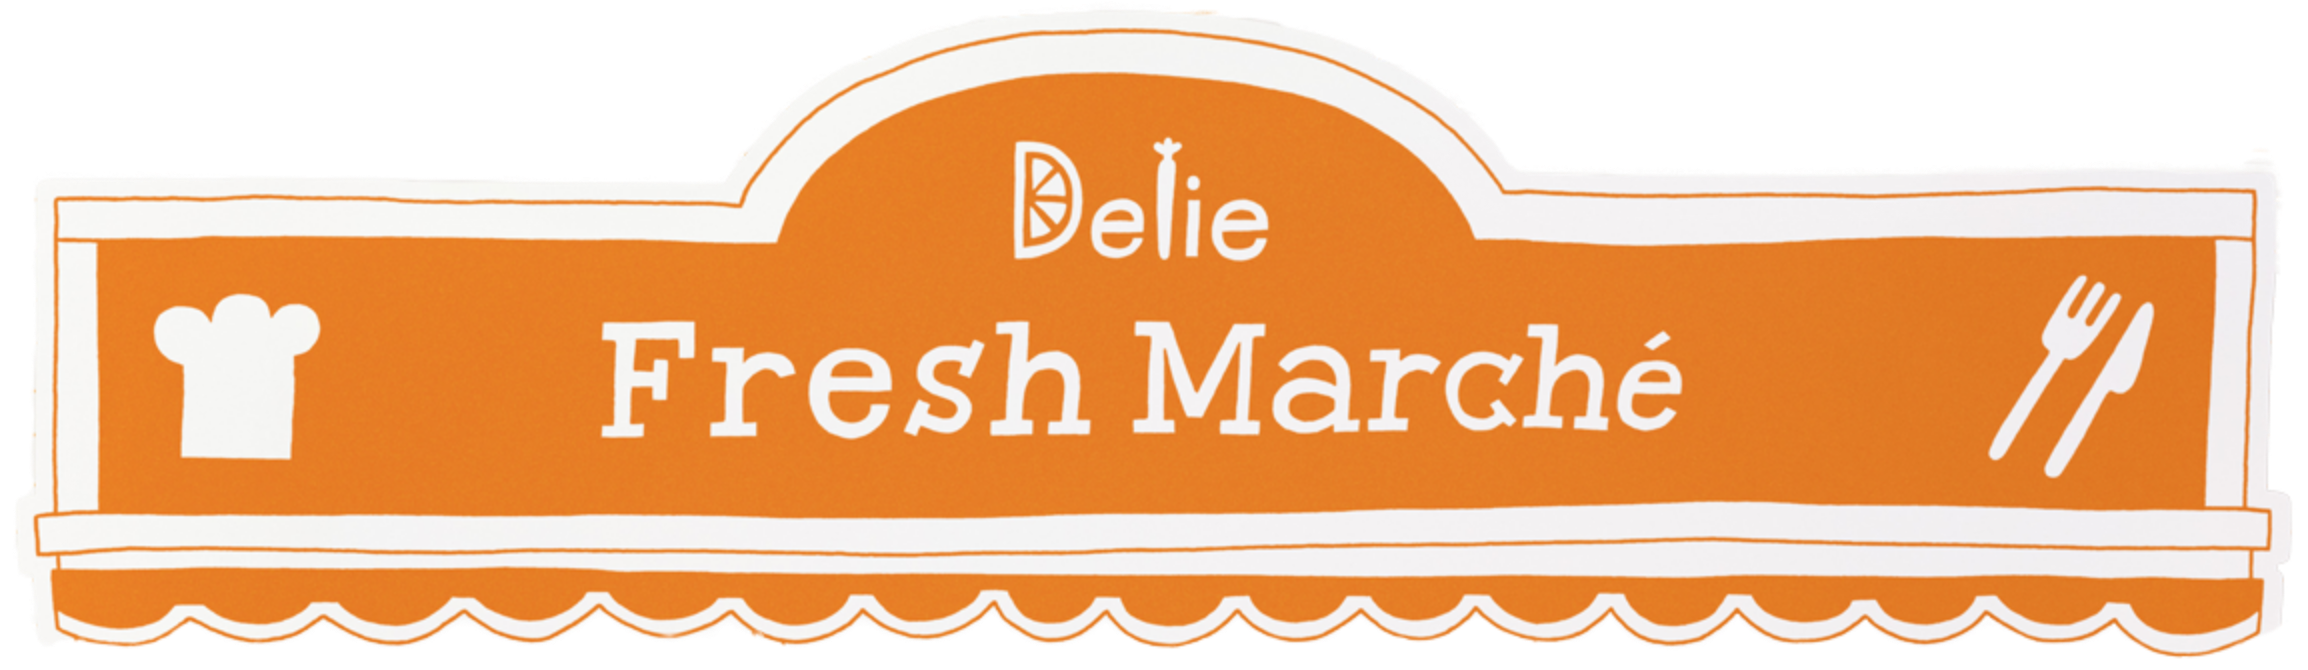 Delie Fresh Marche